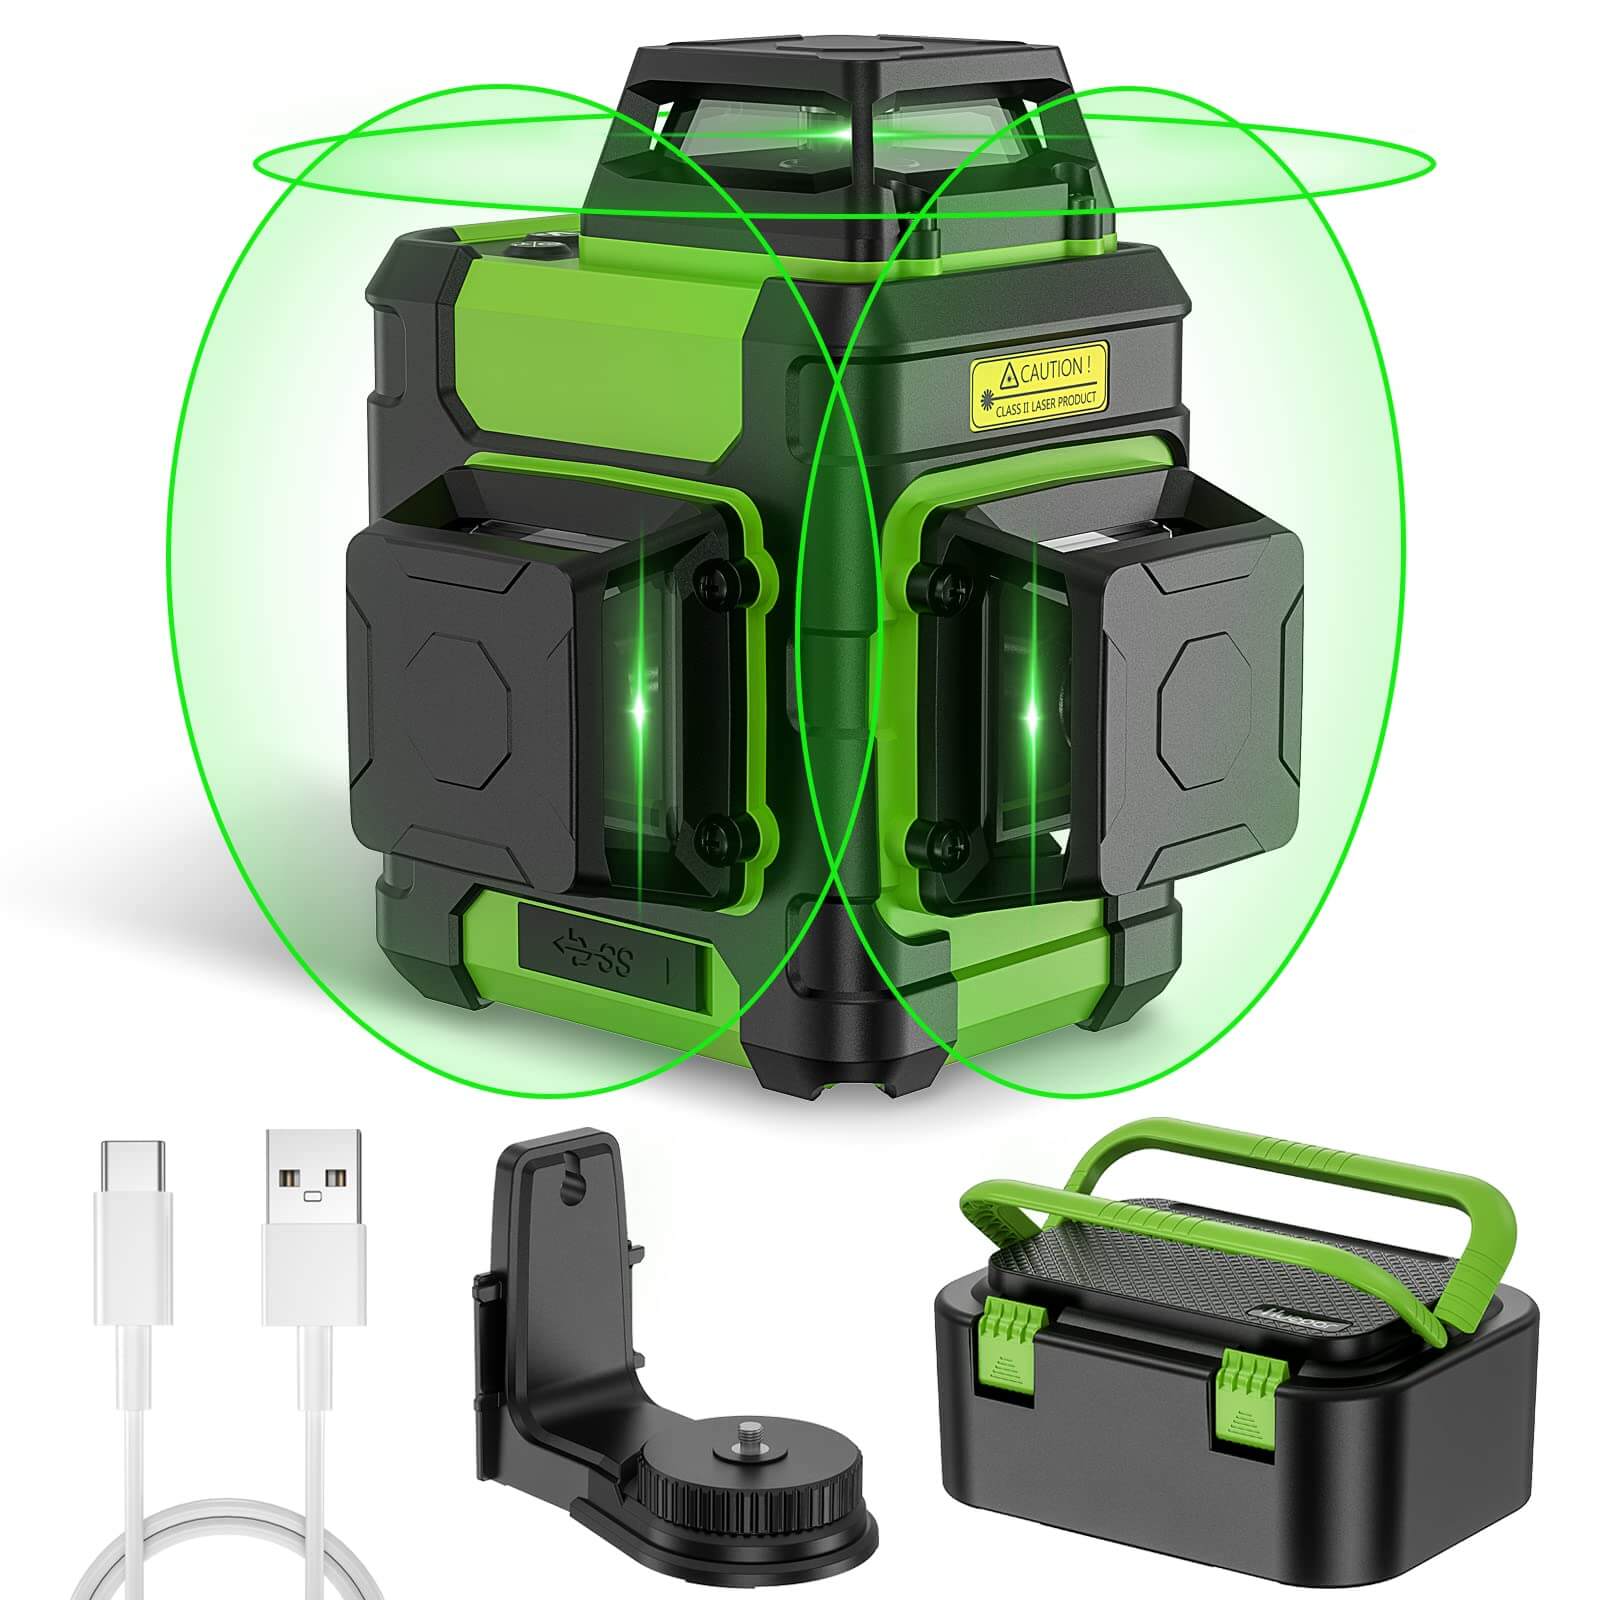 Huepar HM03CG – Selbstnivellierendes 3D-Kreuzlinienlaser-Nivelliergerät mit grünem Strahl und Pulse-Modus, tragbare Hartschalen-Tragetasche im Lieferumfang enthalten